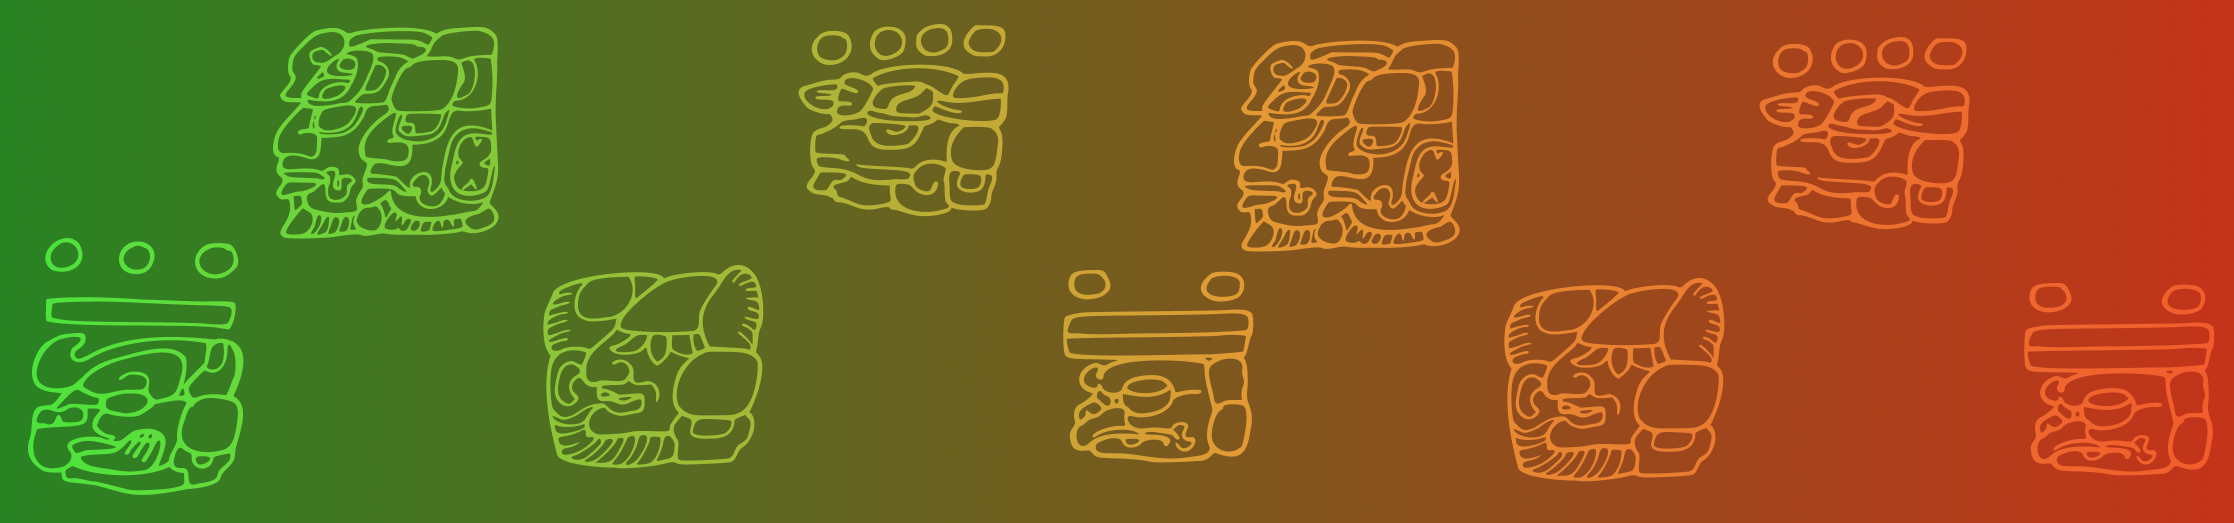 El increíble periplo en torno al desciframiento de los glifos maya